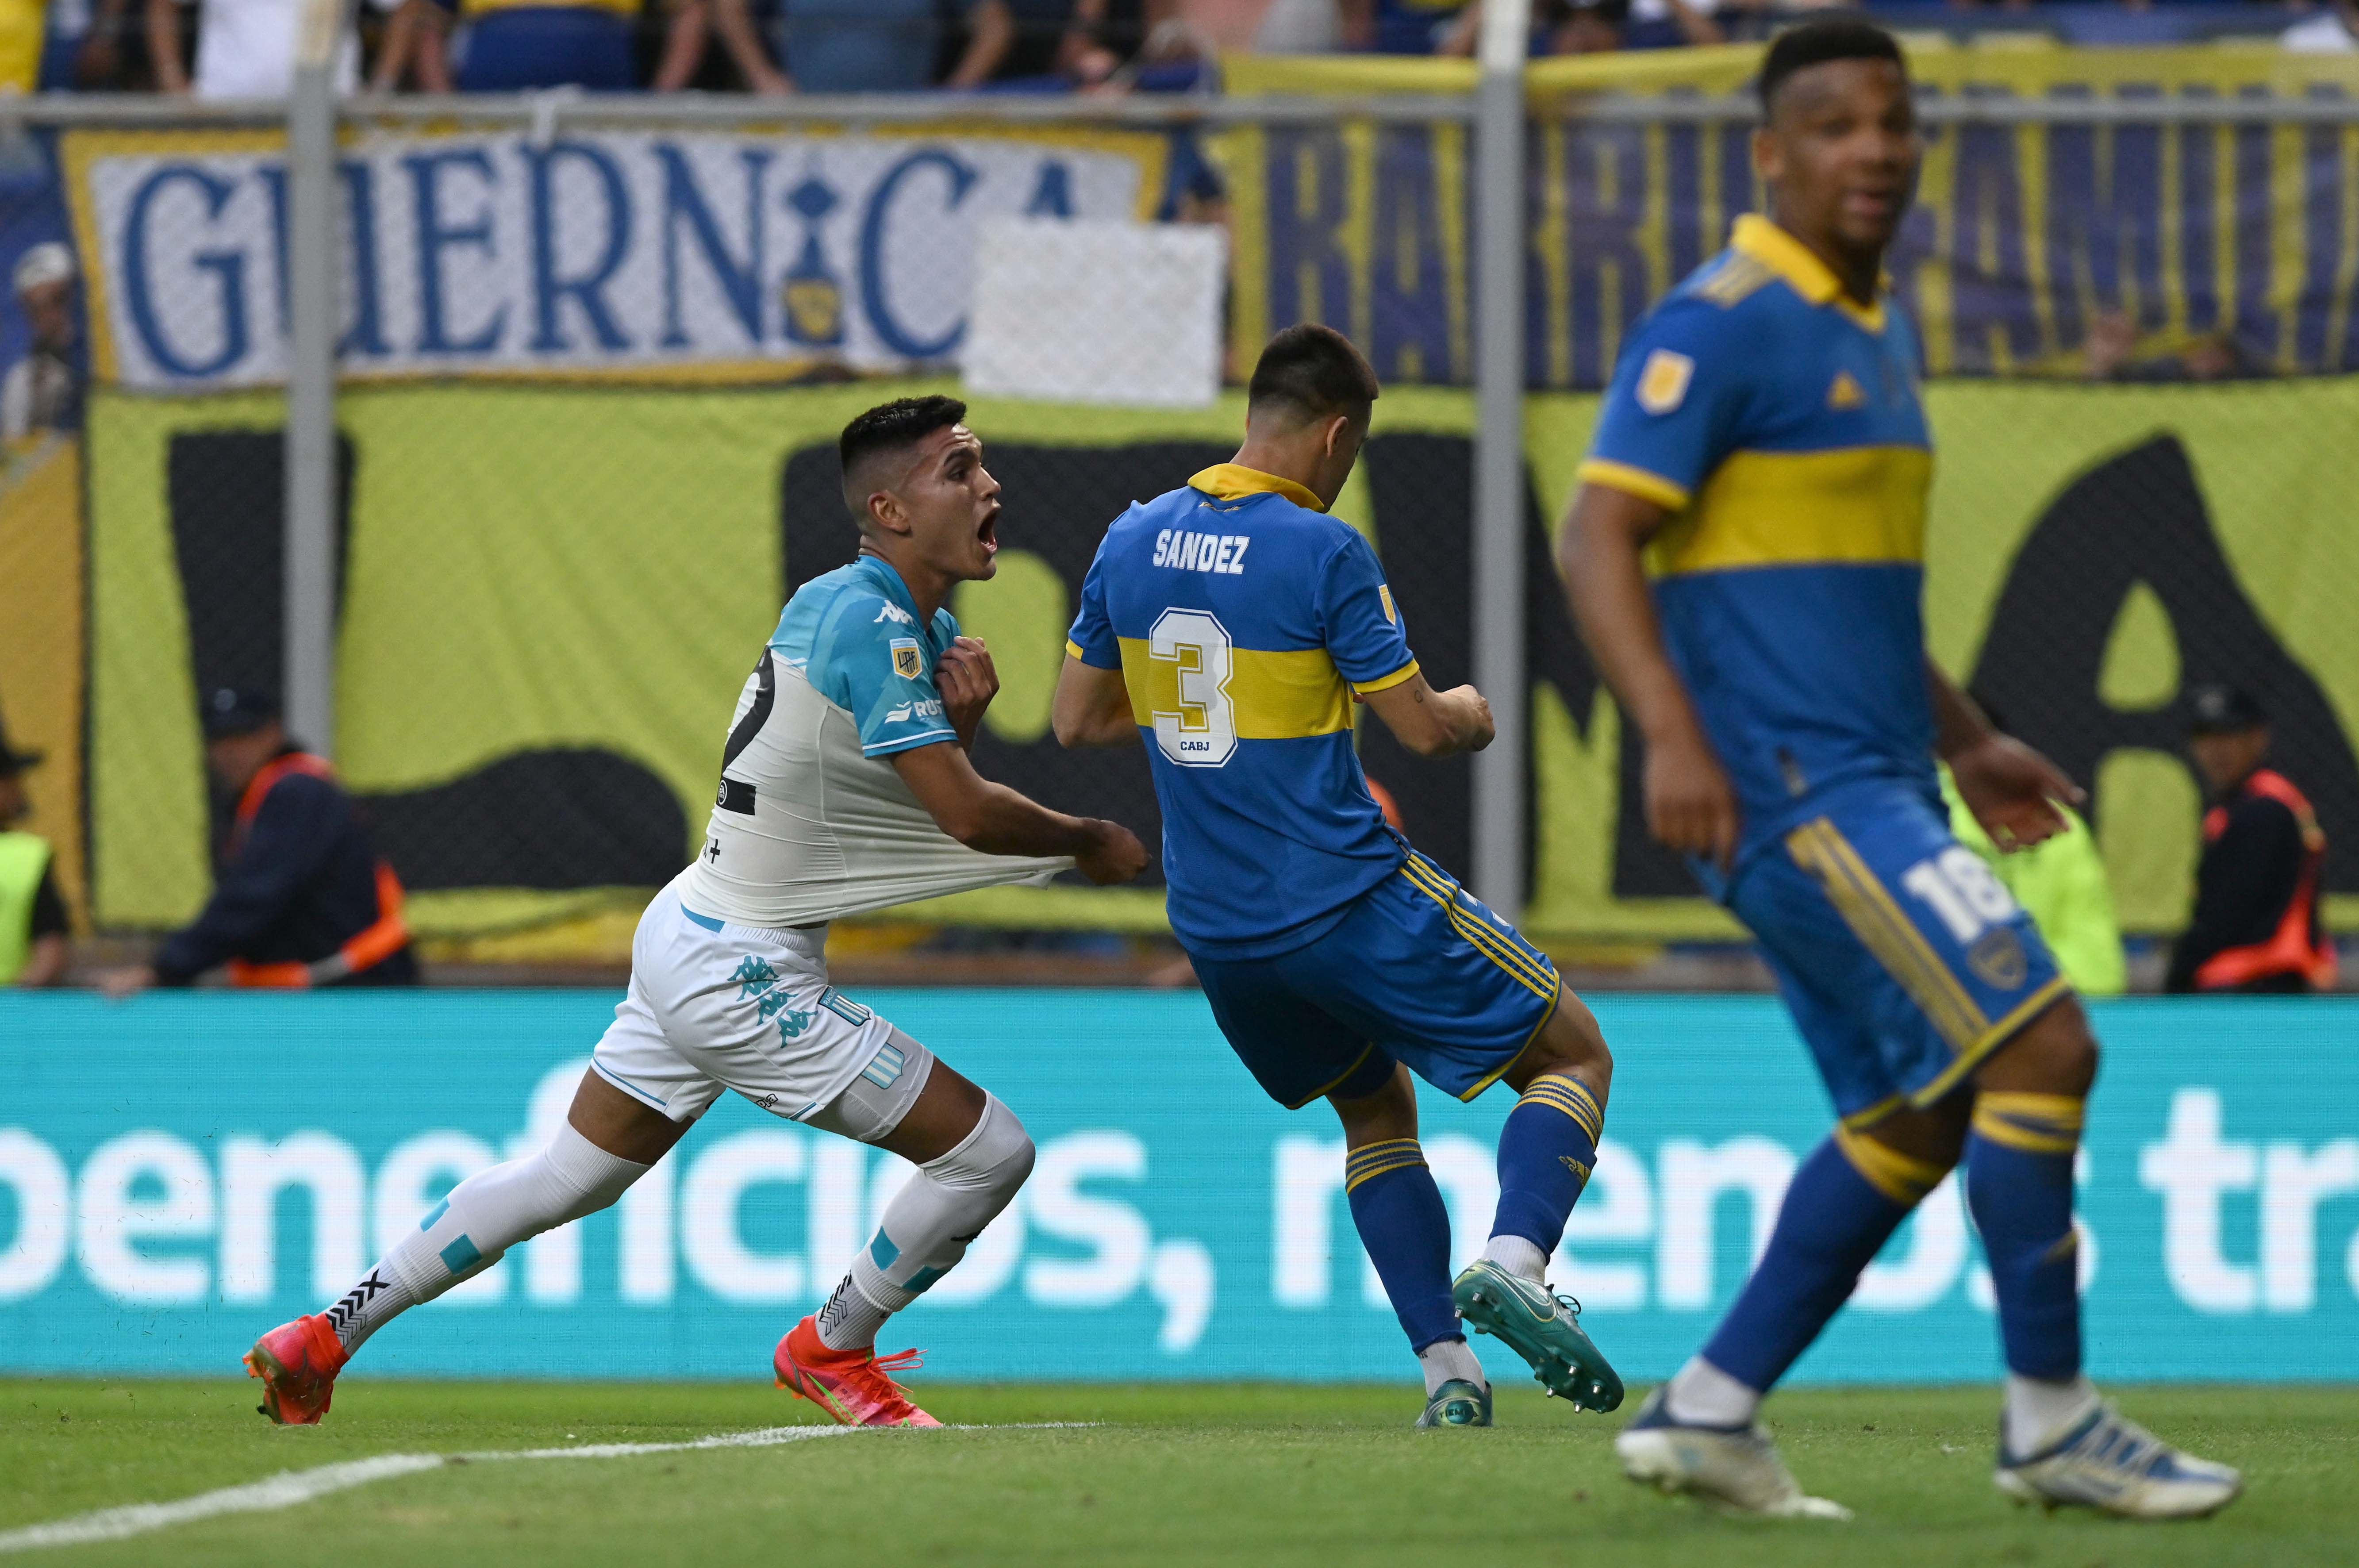 “Había un silencio tremendo” y “si hago otro gol pensaría cómo festejarlo, así no ganamos por abandono”: las bombas de Charly Alcaraz contra Boca Juniors